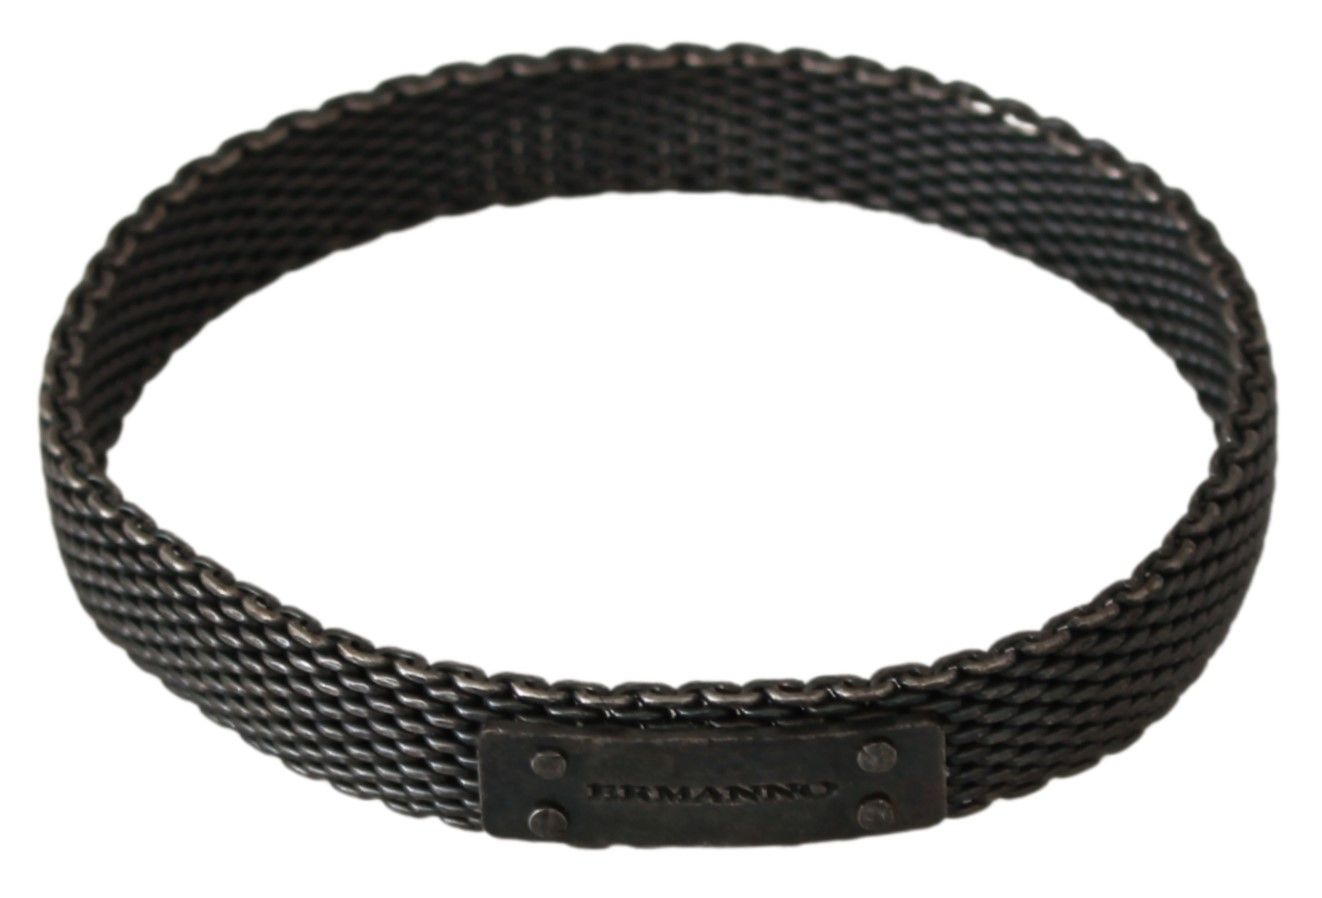 Ermanno Scervino Silver Branded Metal Steel Unisex Bracelet